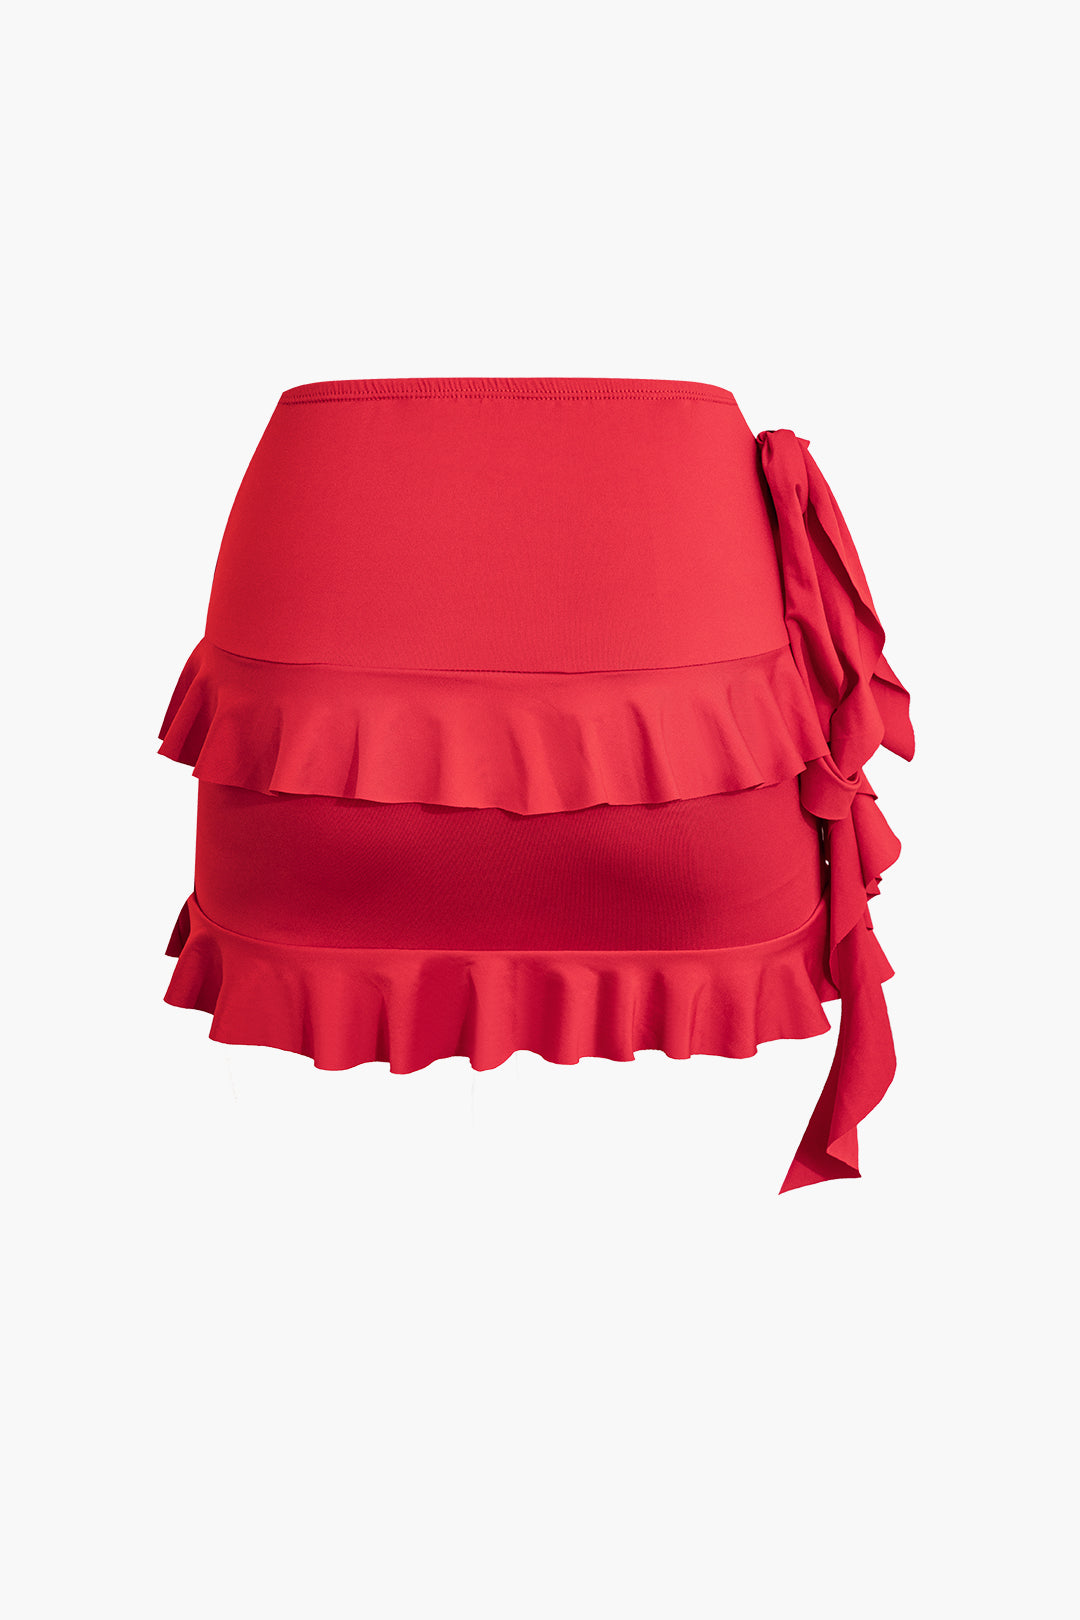 Ruffle Detail Tank Top And Mini Skirt Set